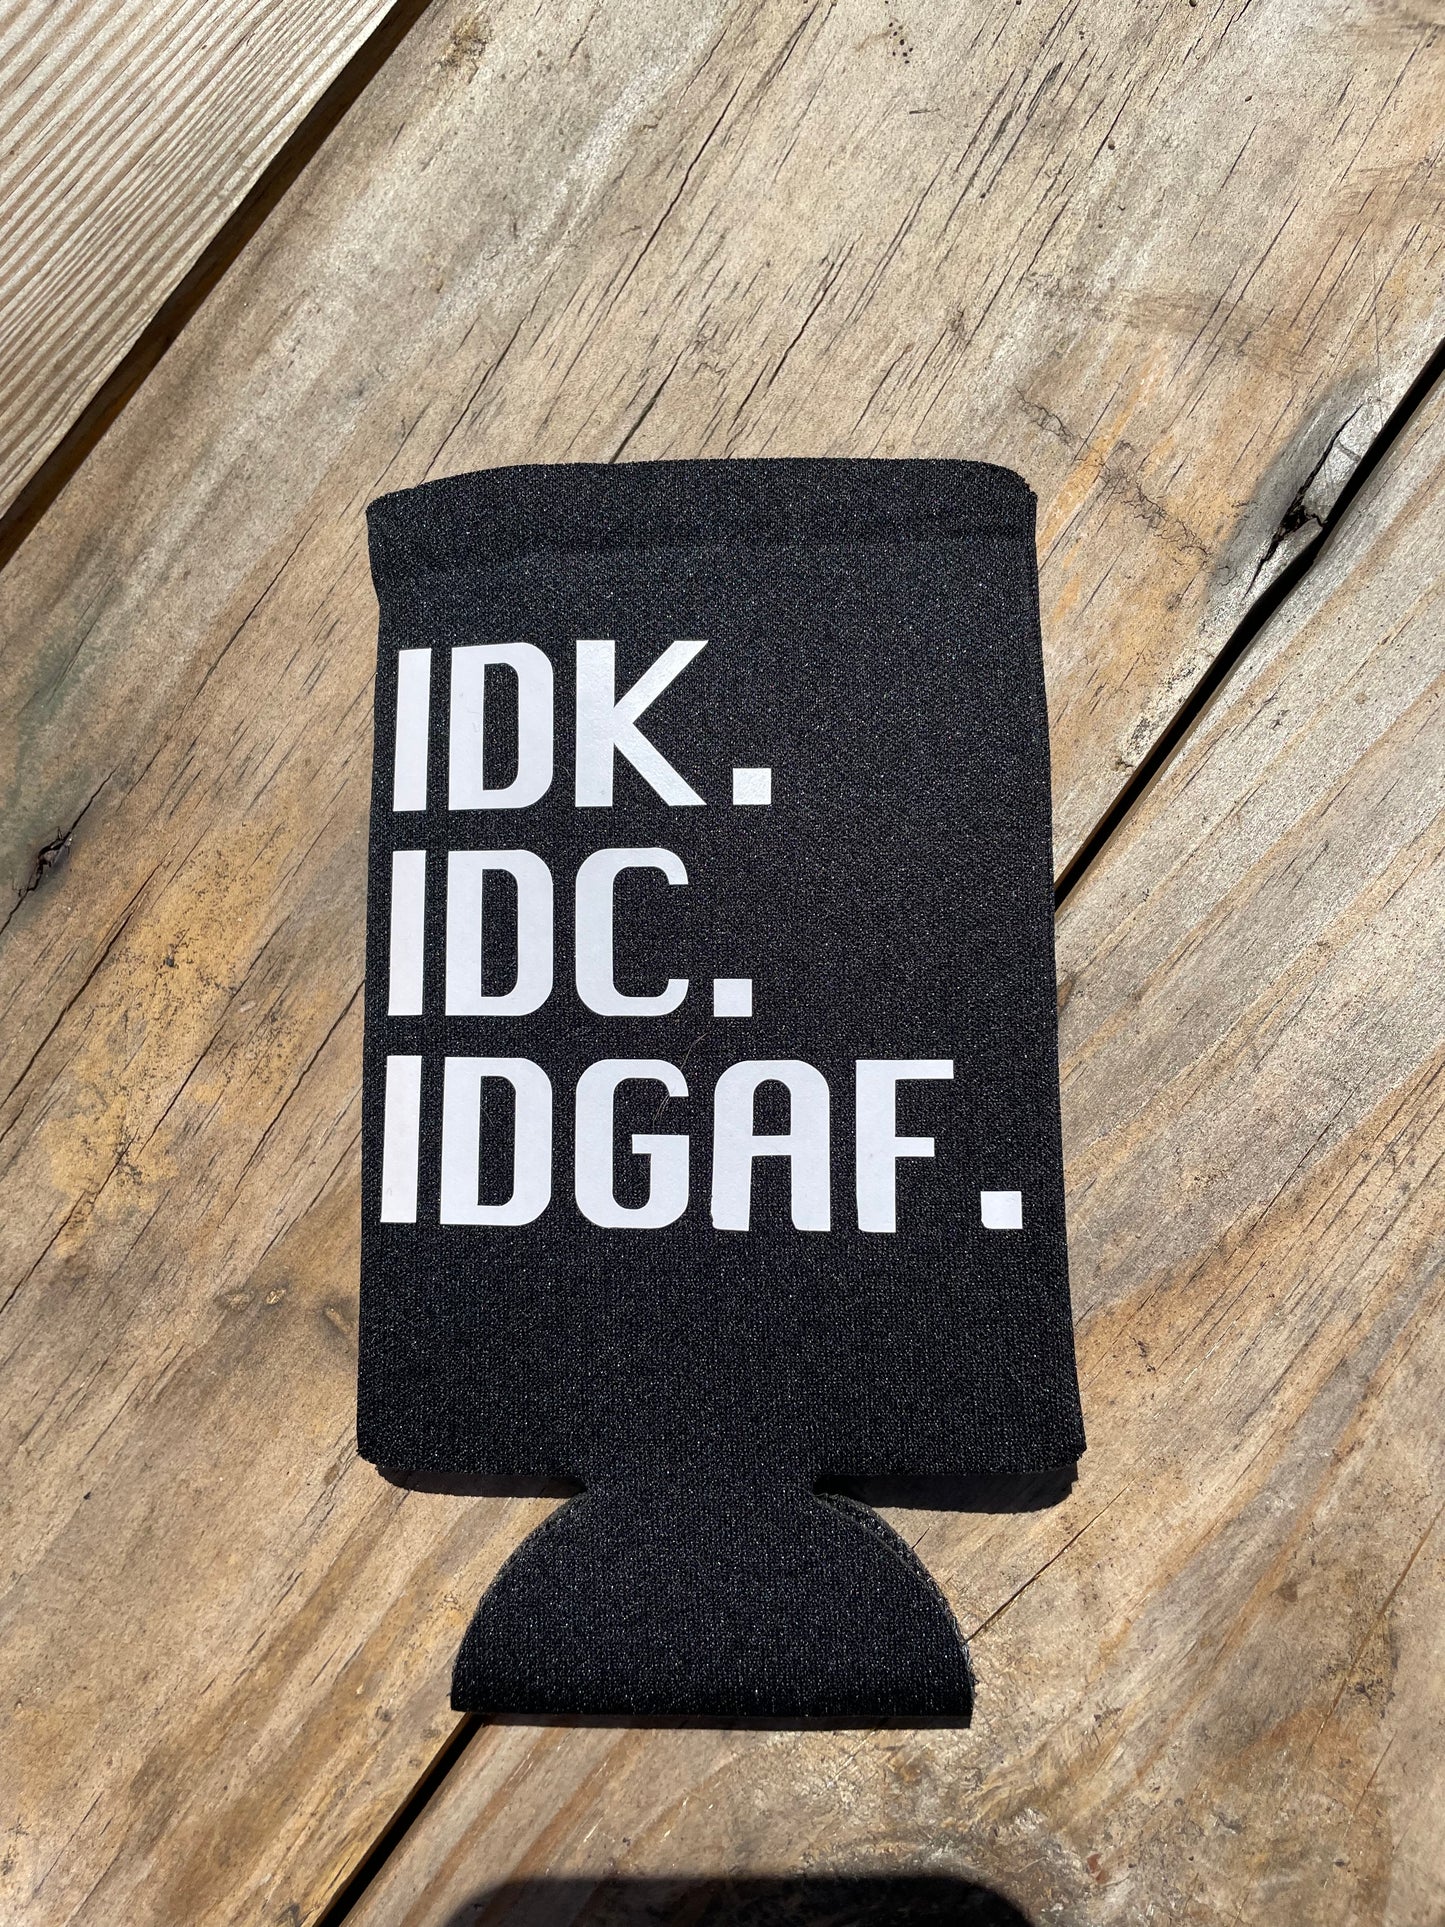 IDK. IDC. IDGAF. Slim Can Koozie